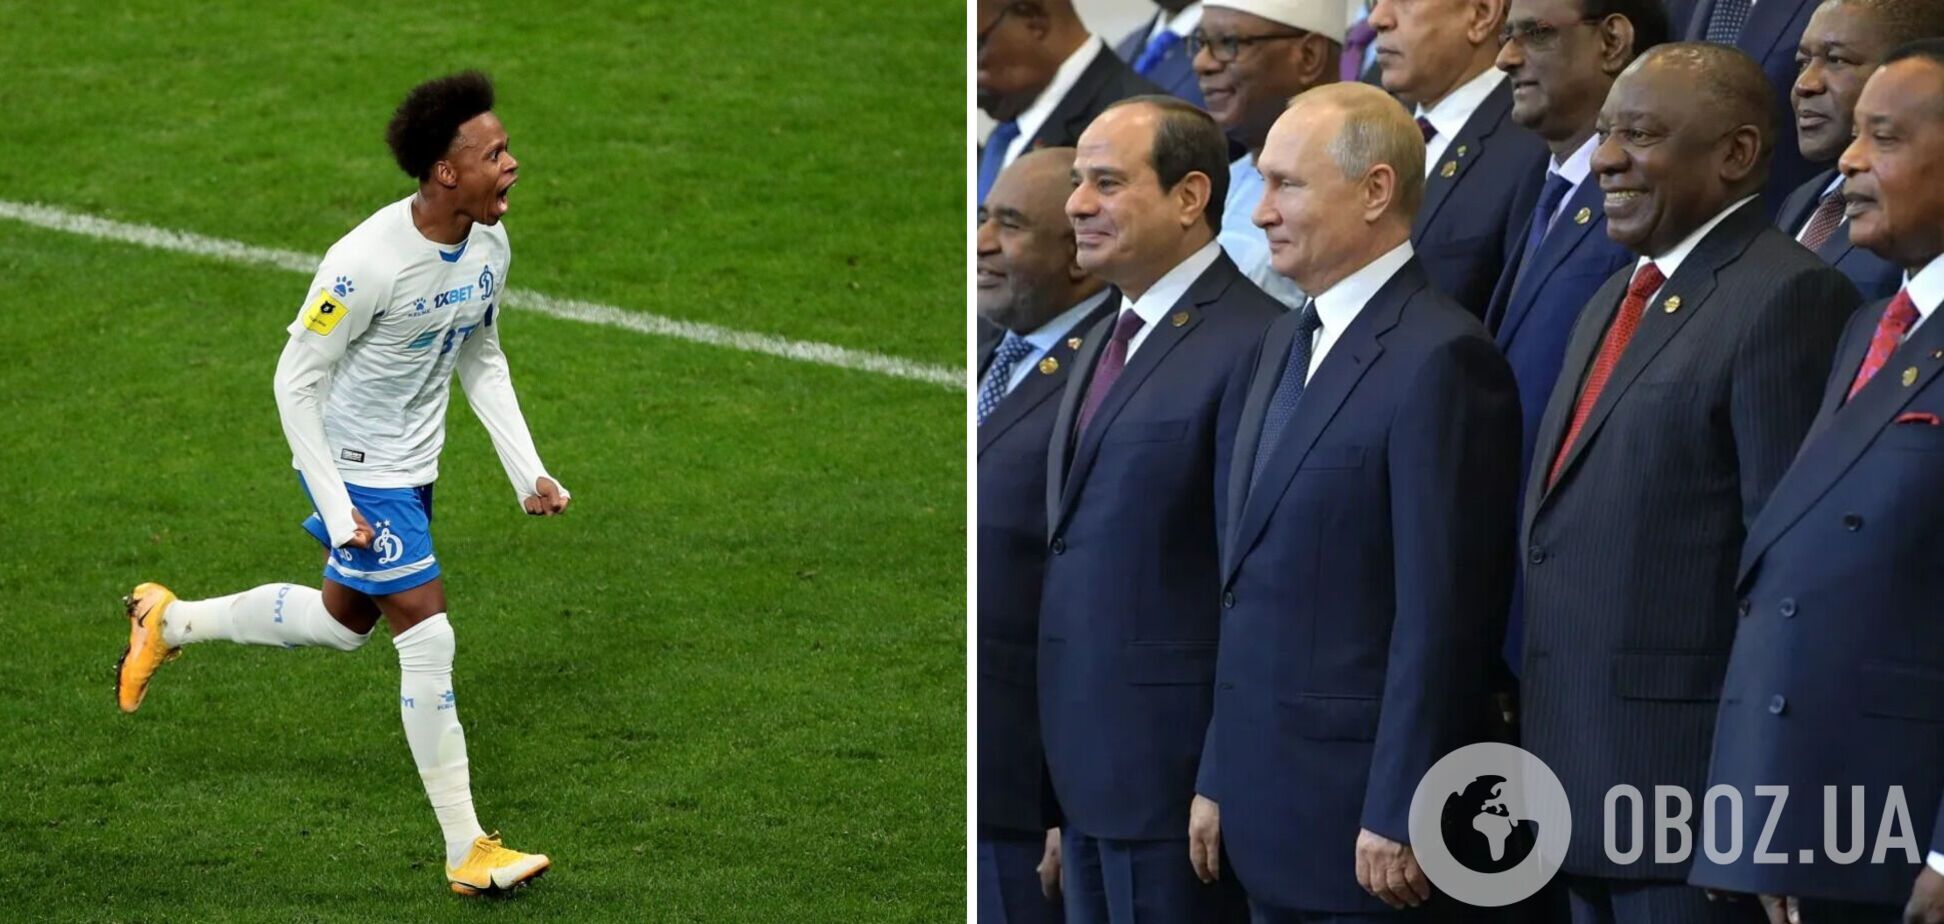 Футболист российского клуба заявил, что 'Путина очень любят в Африке'. В сети посмеялись